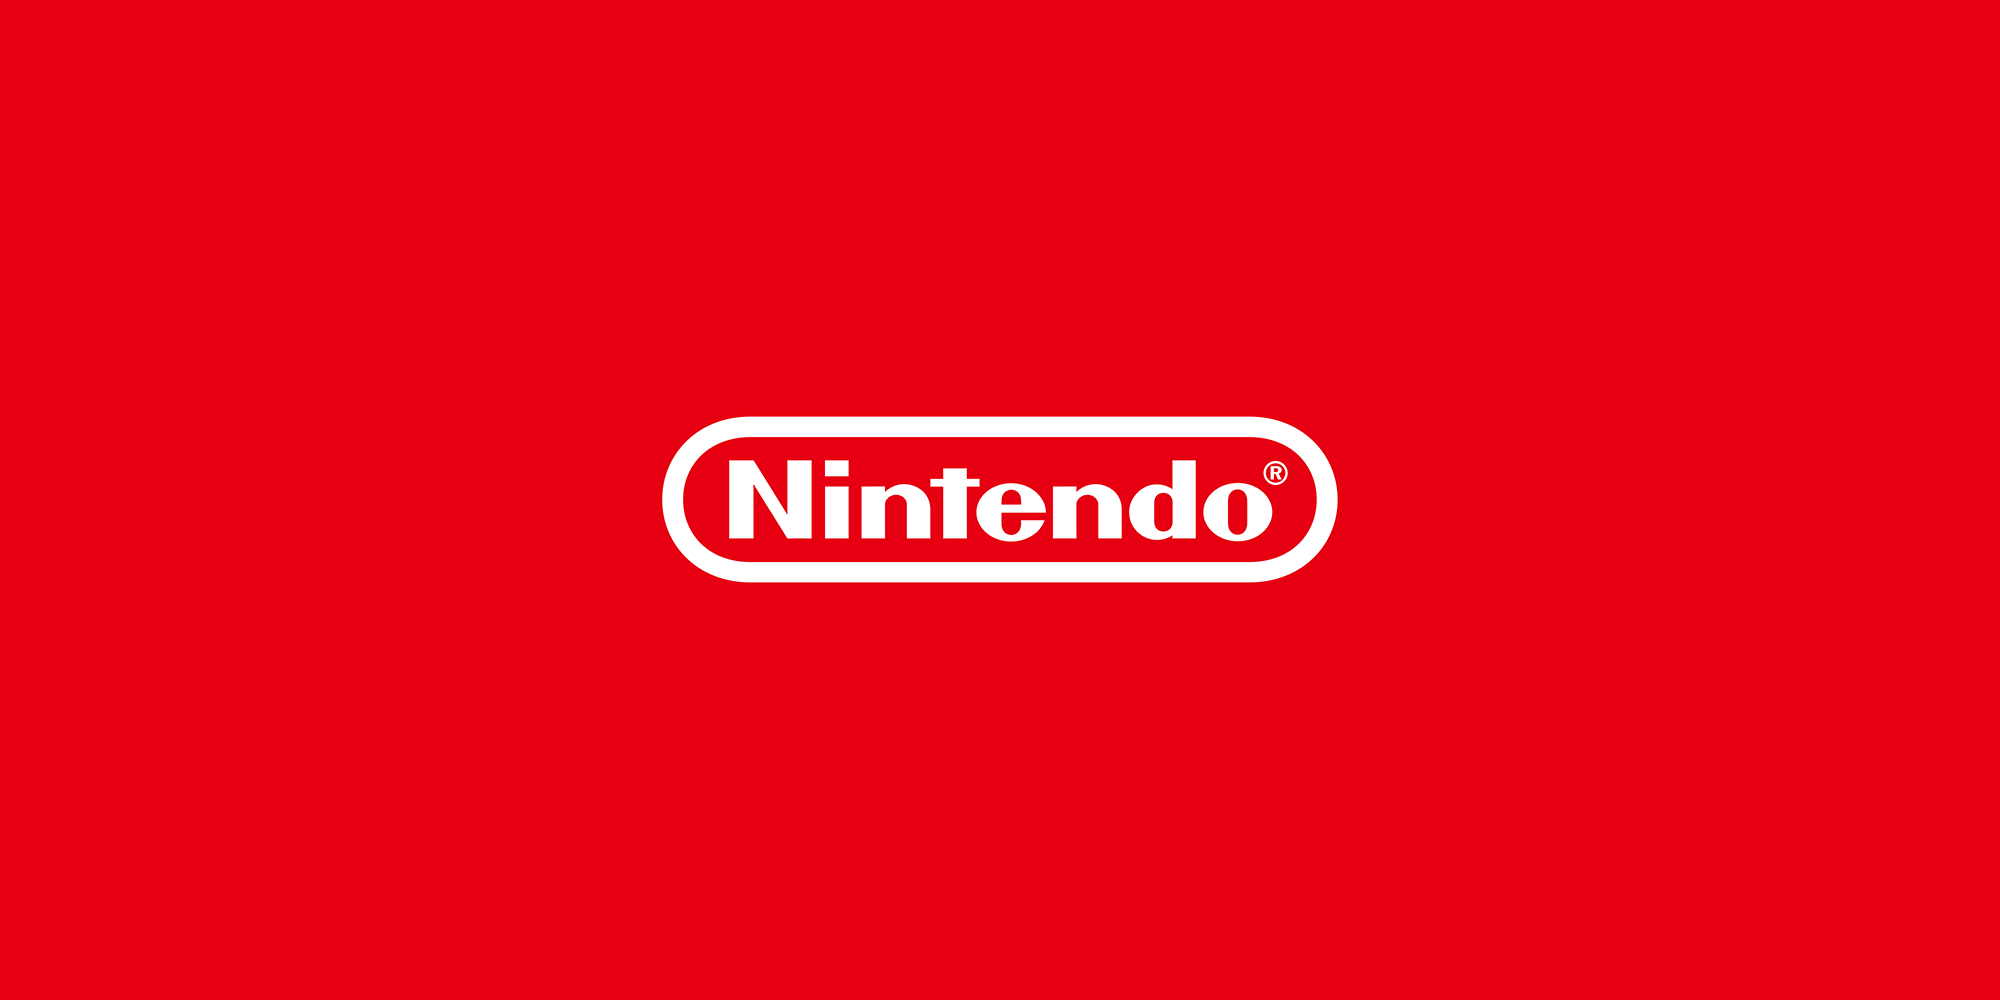 Gli autori di ROM sborseranno 12 milioni a Nintendo